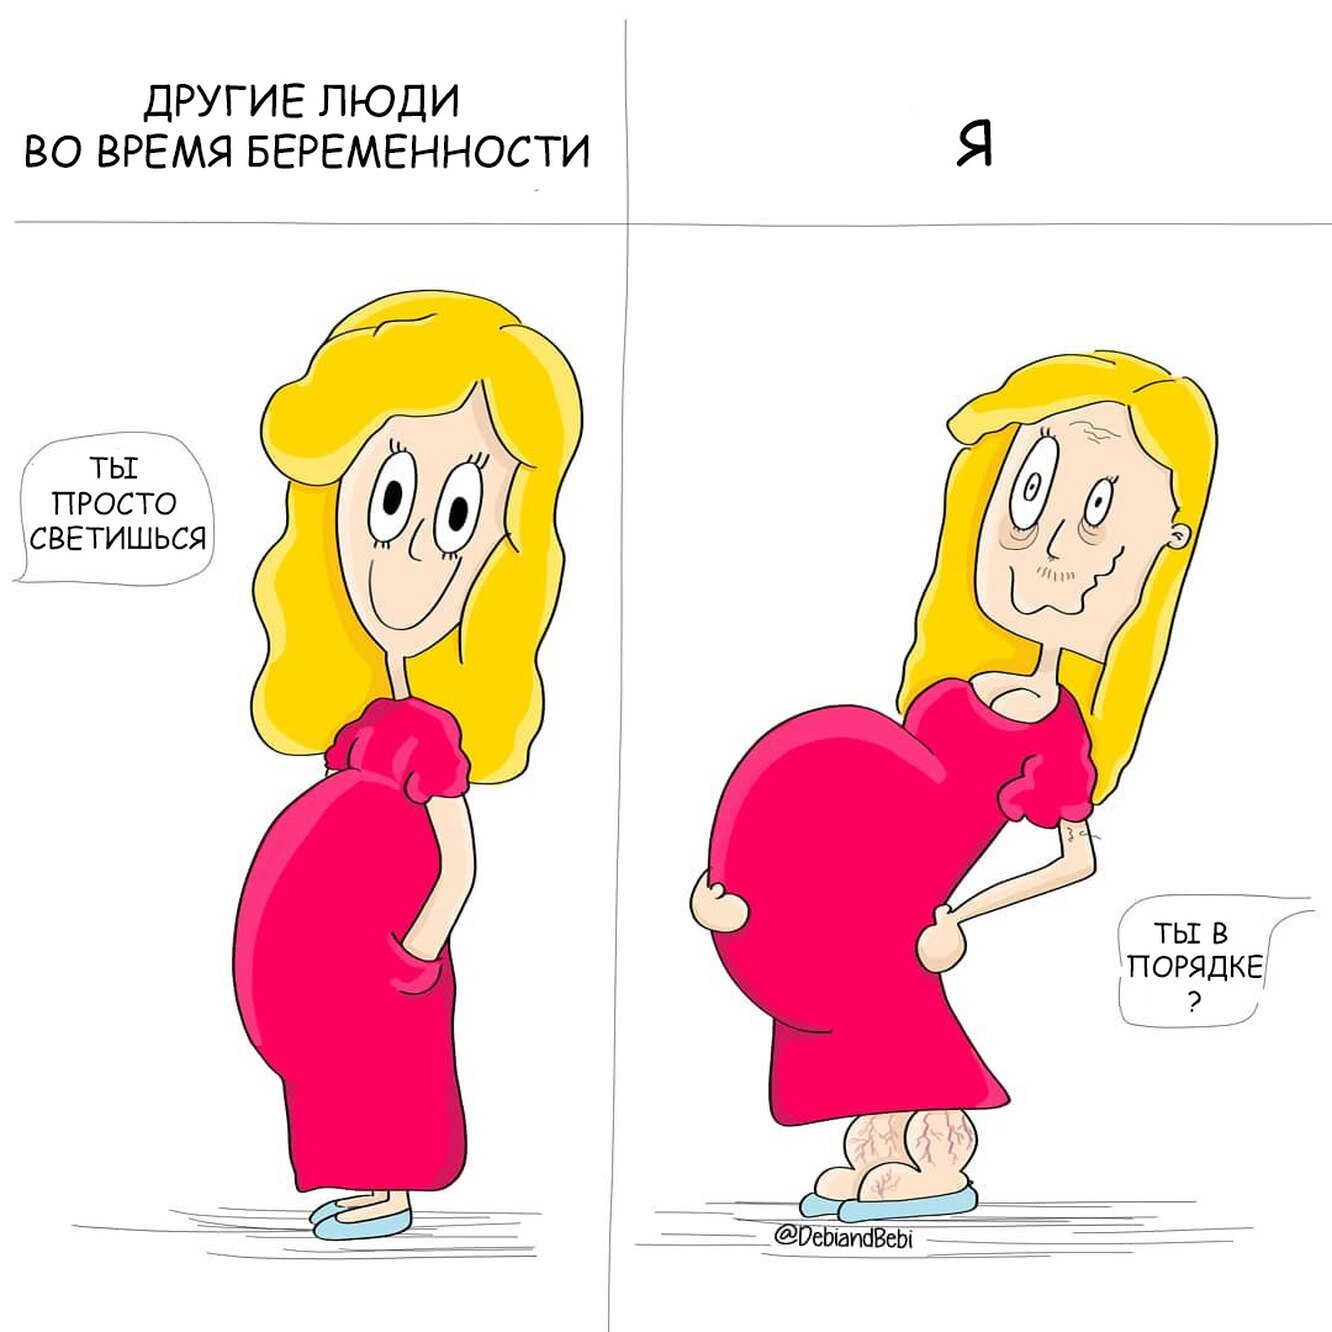 Прикол про беременность. Прикольные про беременных. Мемы про беременность. Смешные рисунки беременных. Смешное про беременность.